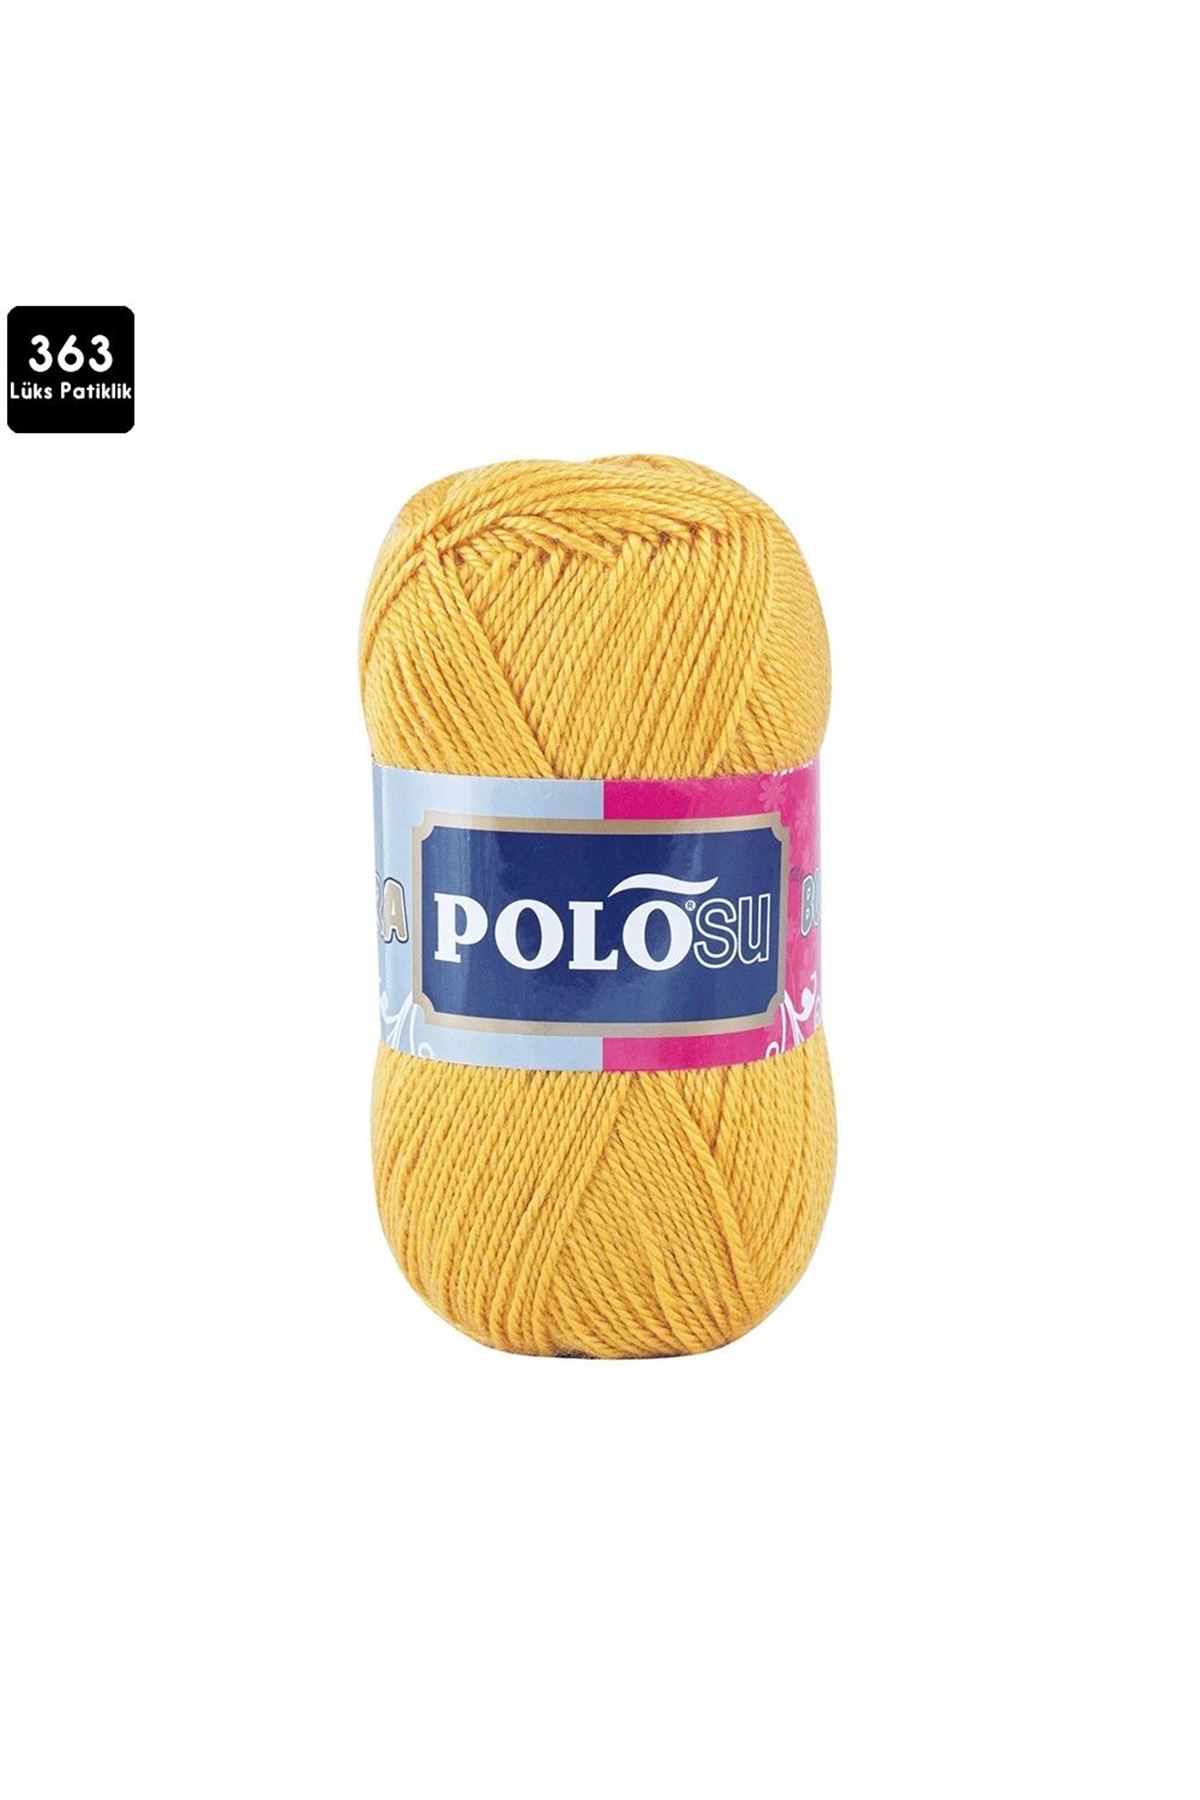 PoloSU Lüks Patiklik Renk No:363